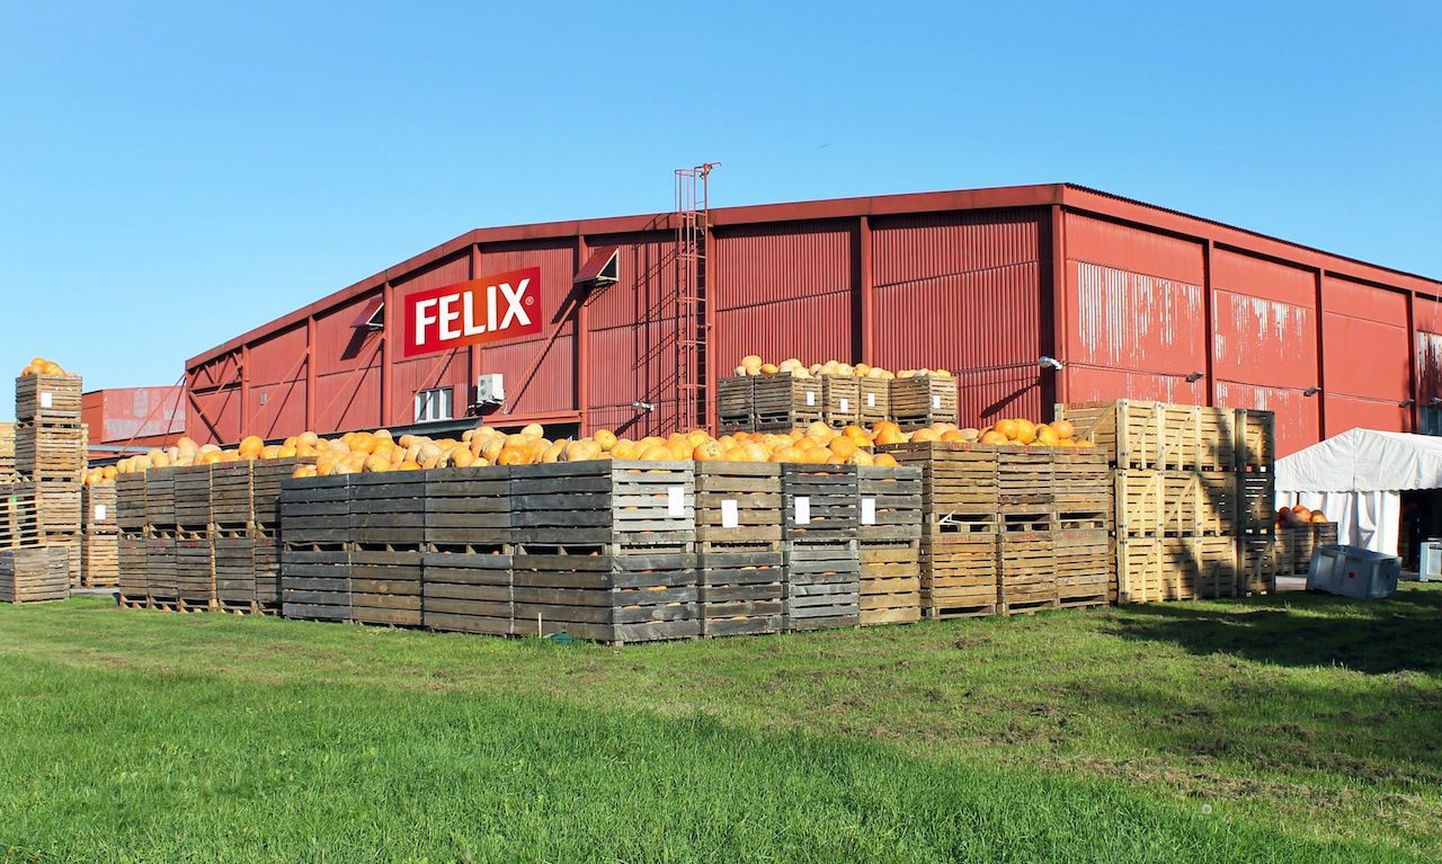 Põltsamaa Felix soovib sel sügisel Eesti talunikelt kokku osta 1000 tonni kõrvitsat.